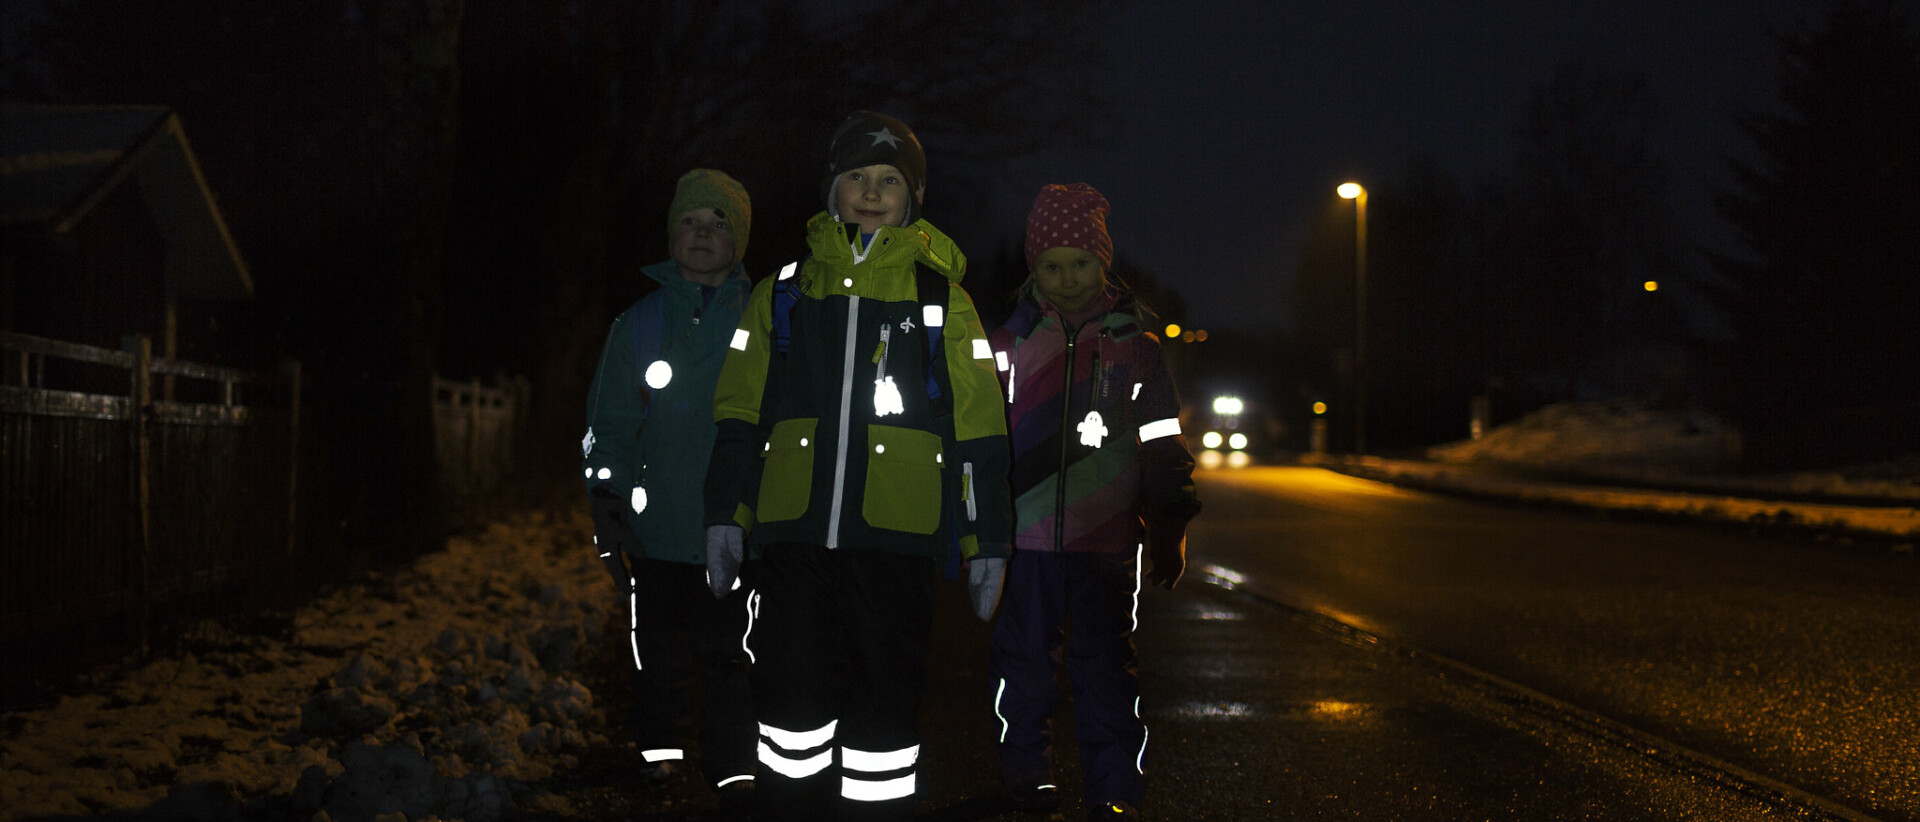 Kolme lasta kävelee pimeässä heijastimet loistaen.